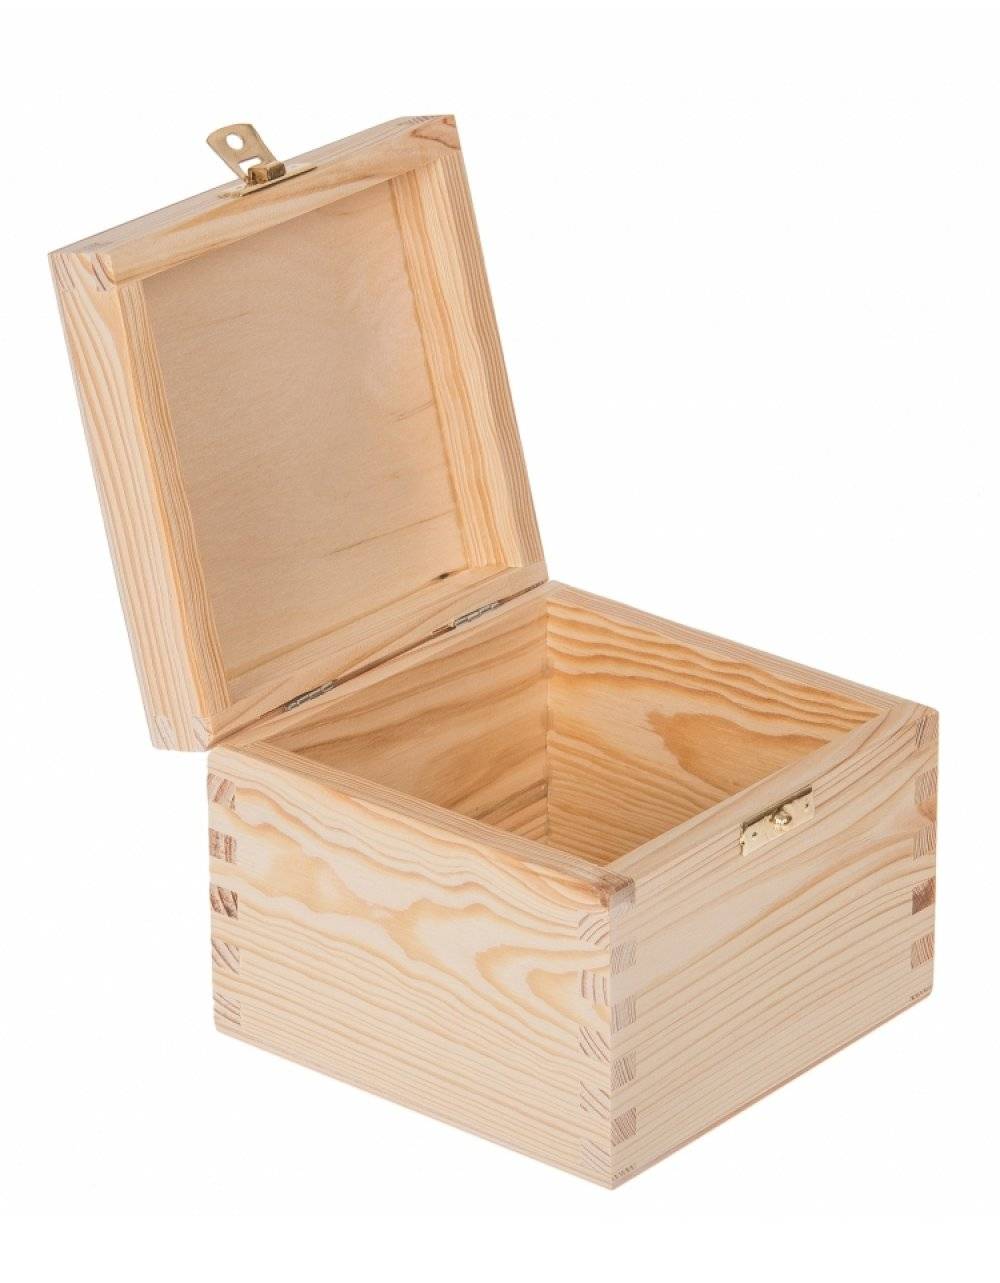 Přírodní dřevěná dárková krabička 13x13x10 cm